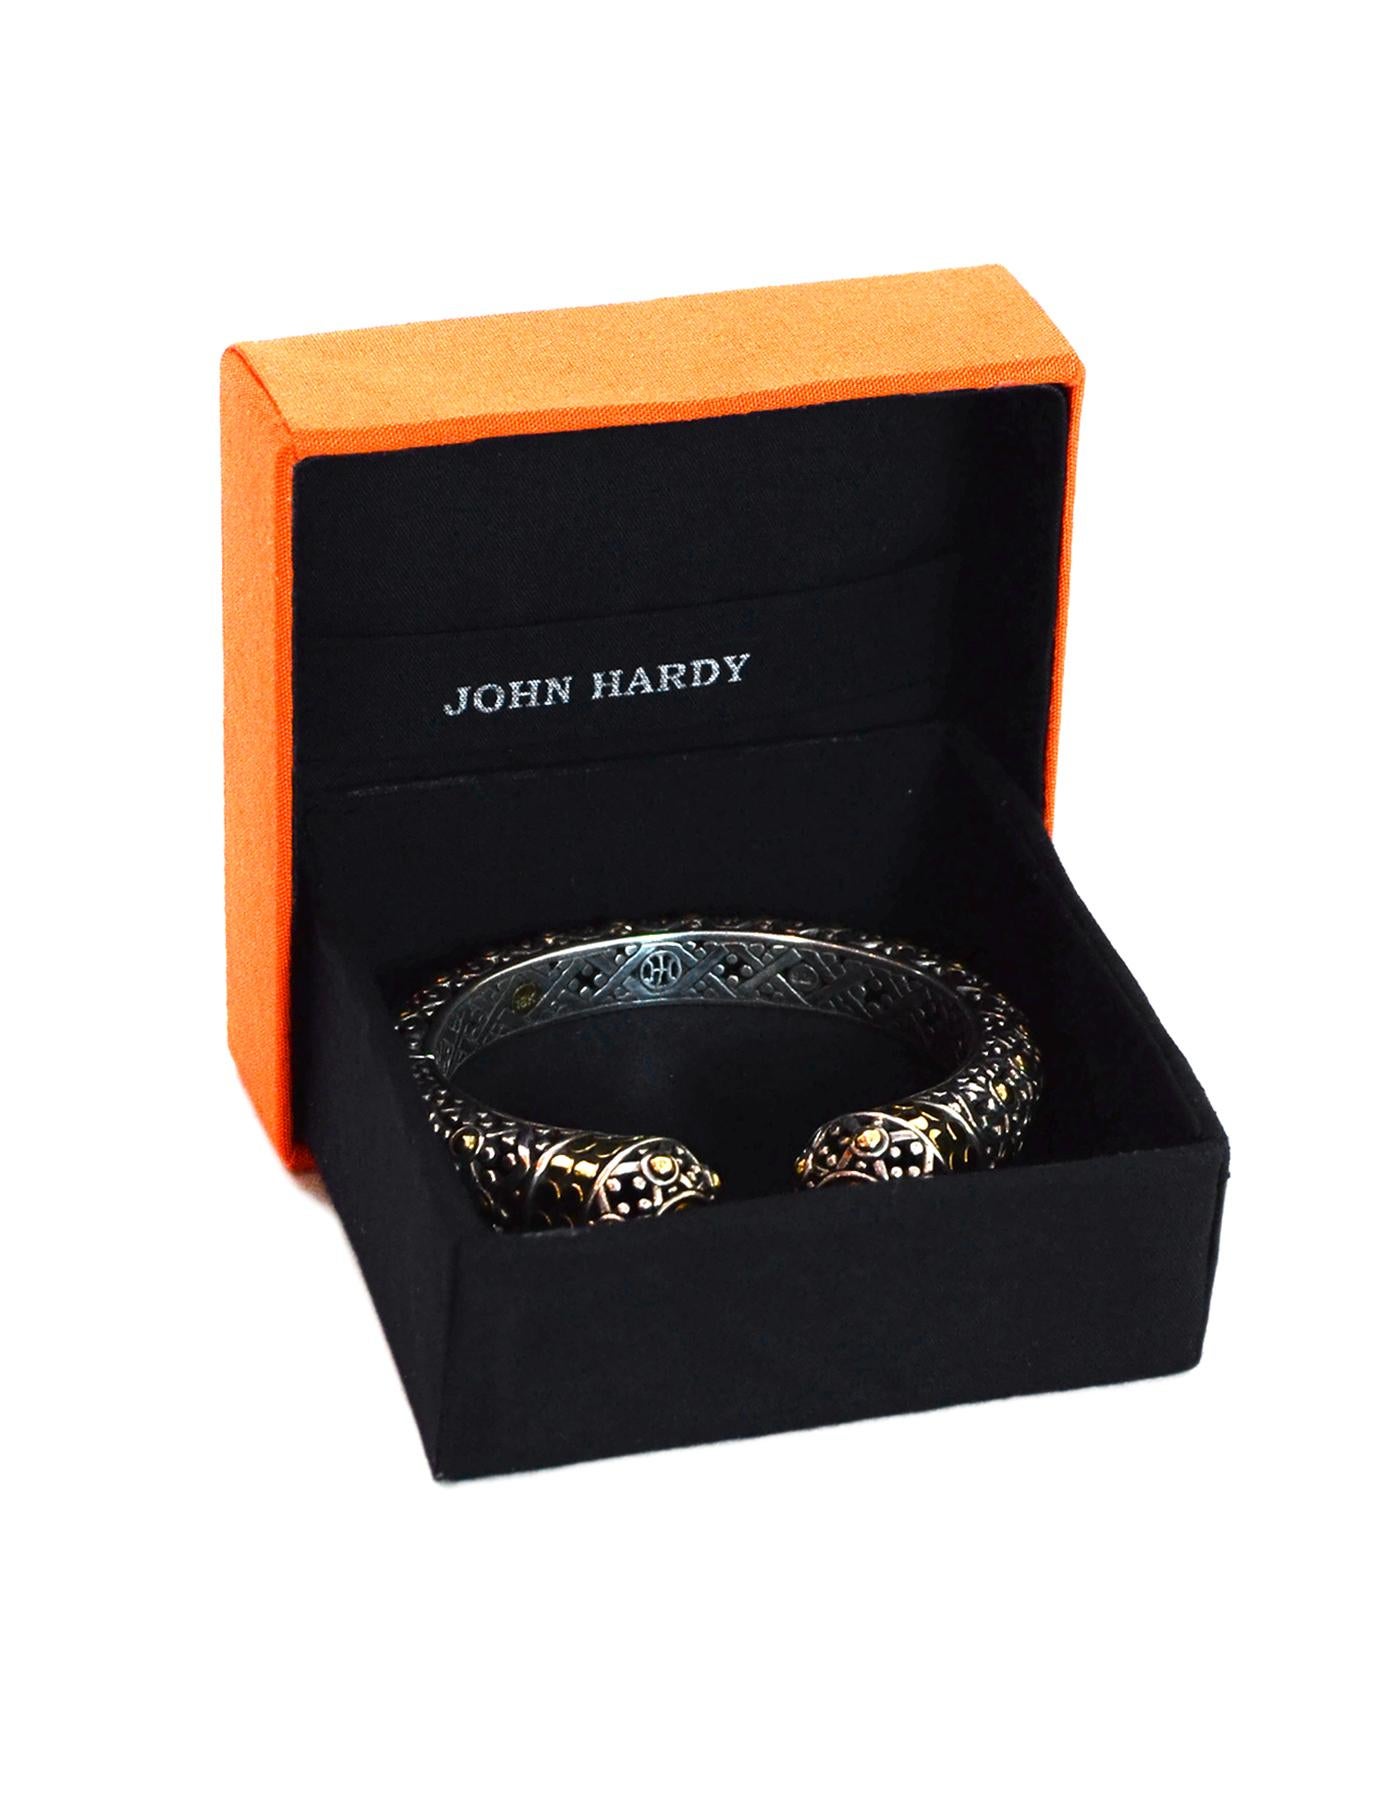 John Hardy Sterling Silver/18K Gold Jaisalmer Dot Kick Cuff Bracelet W/ Box

Color: Silver, gold
Materials:  Sterling silver, 18K gold
Hallmarks: On inside- 